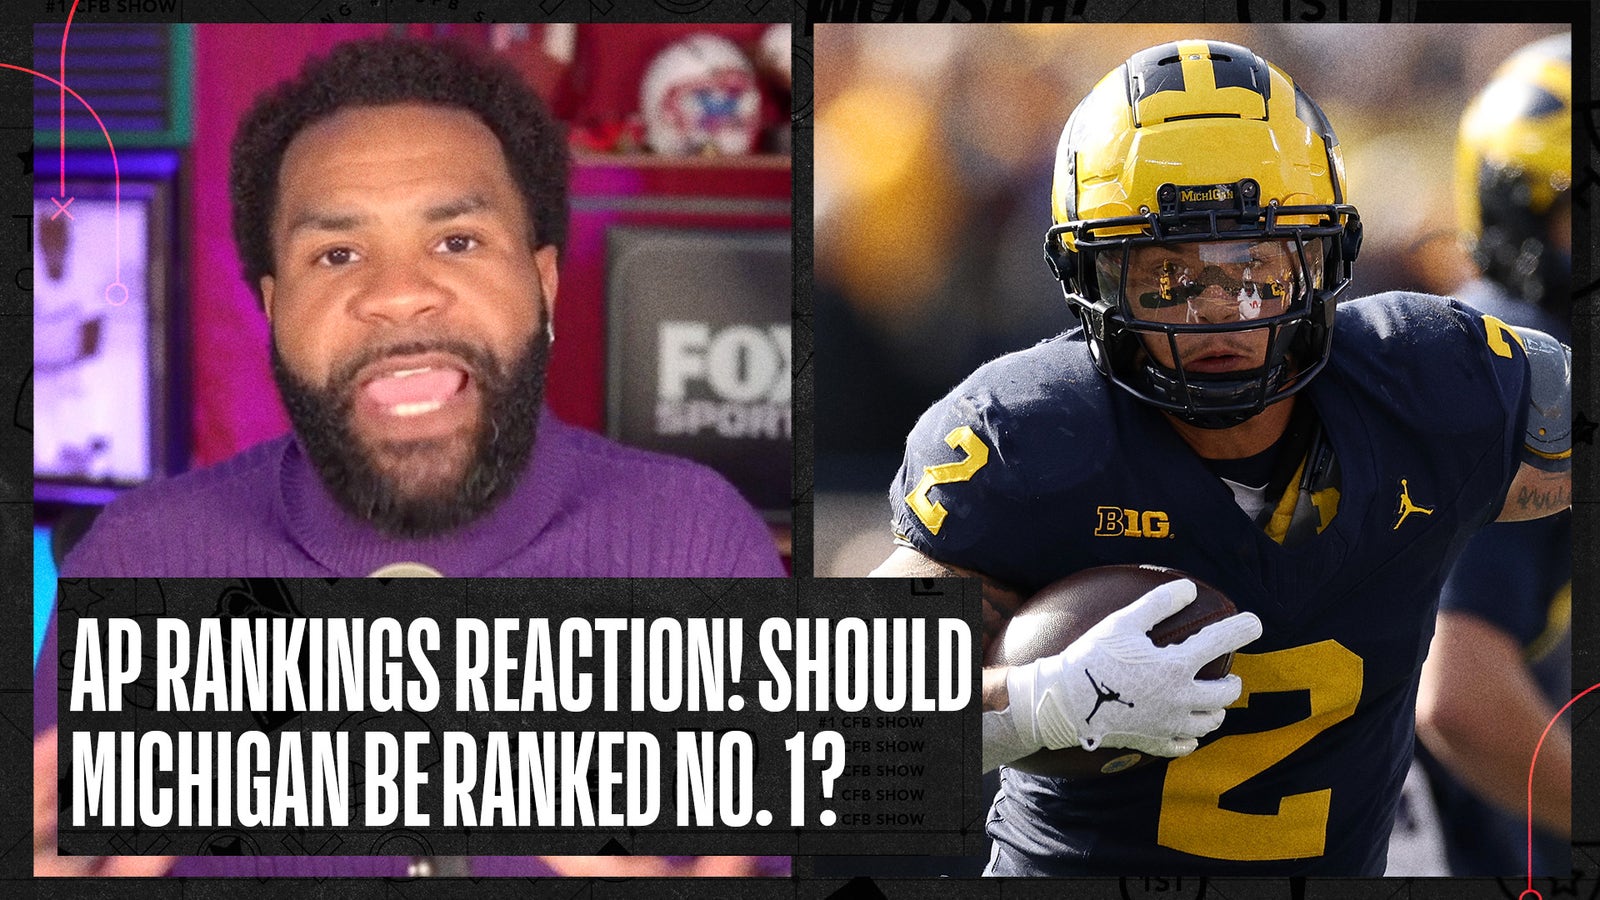 Should Michigan be ranked No. 1?